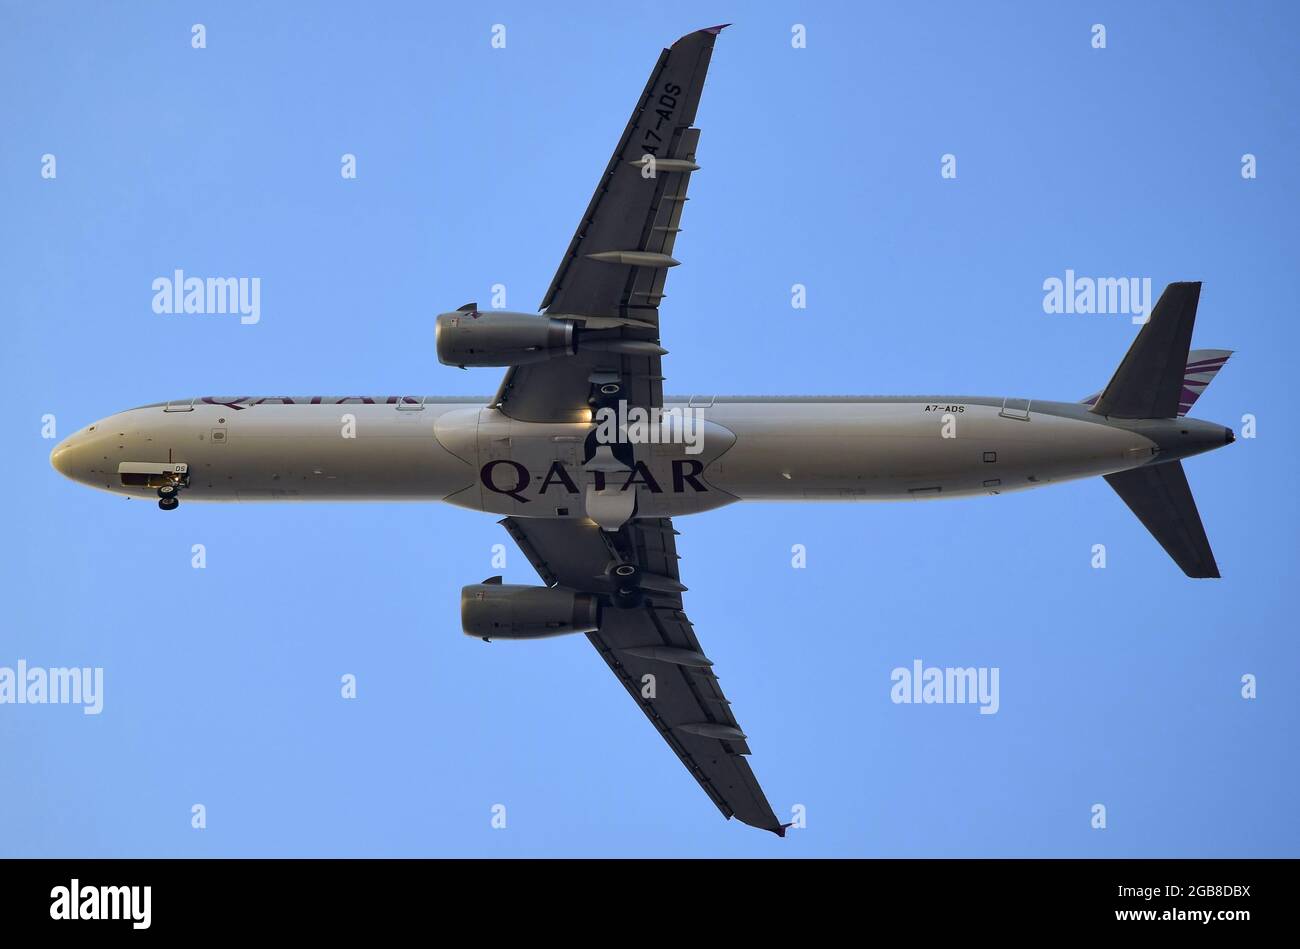 Qatar Airways Airbus A321 Stock Photo